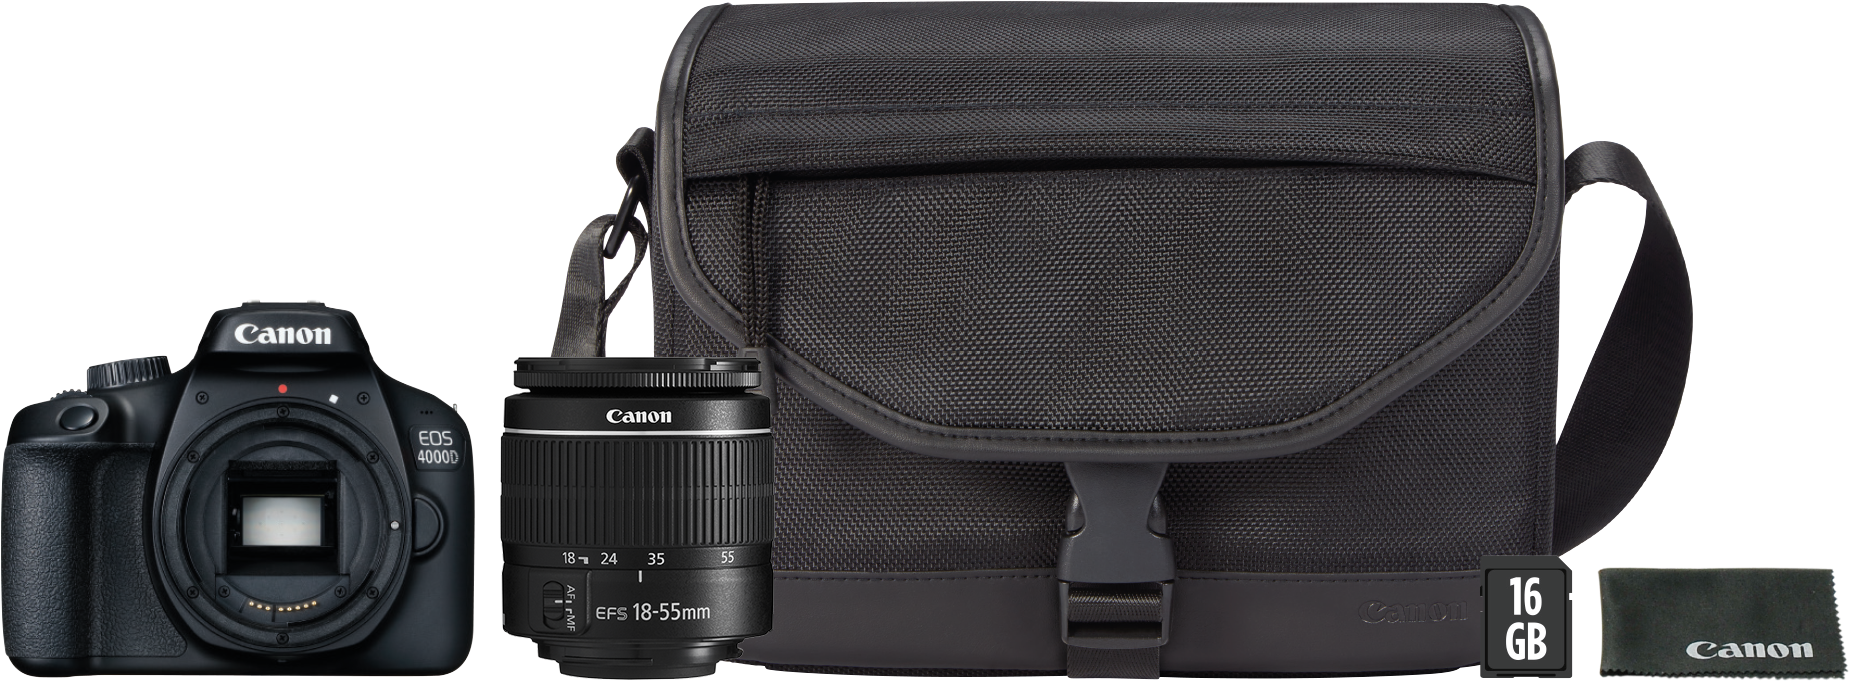 A Camera Lens Next To A Bag